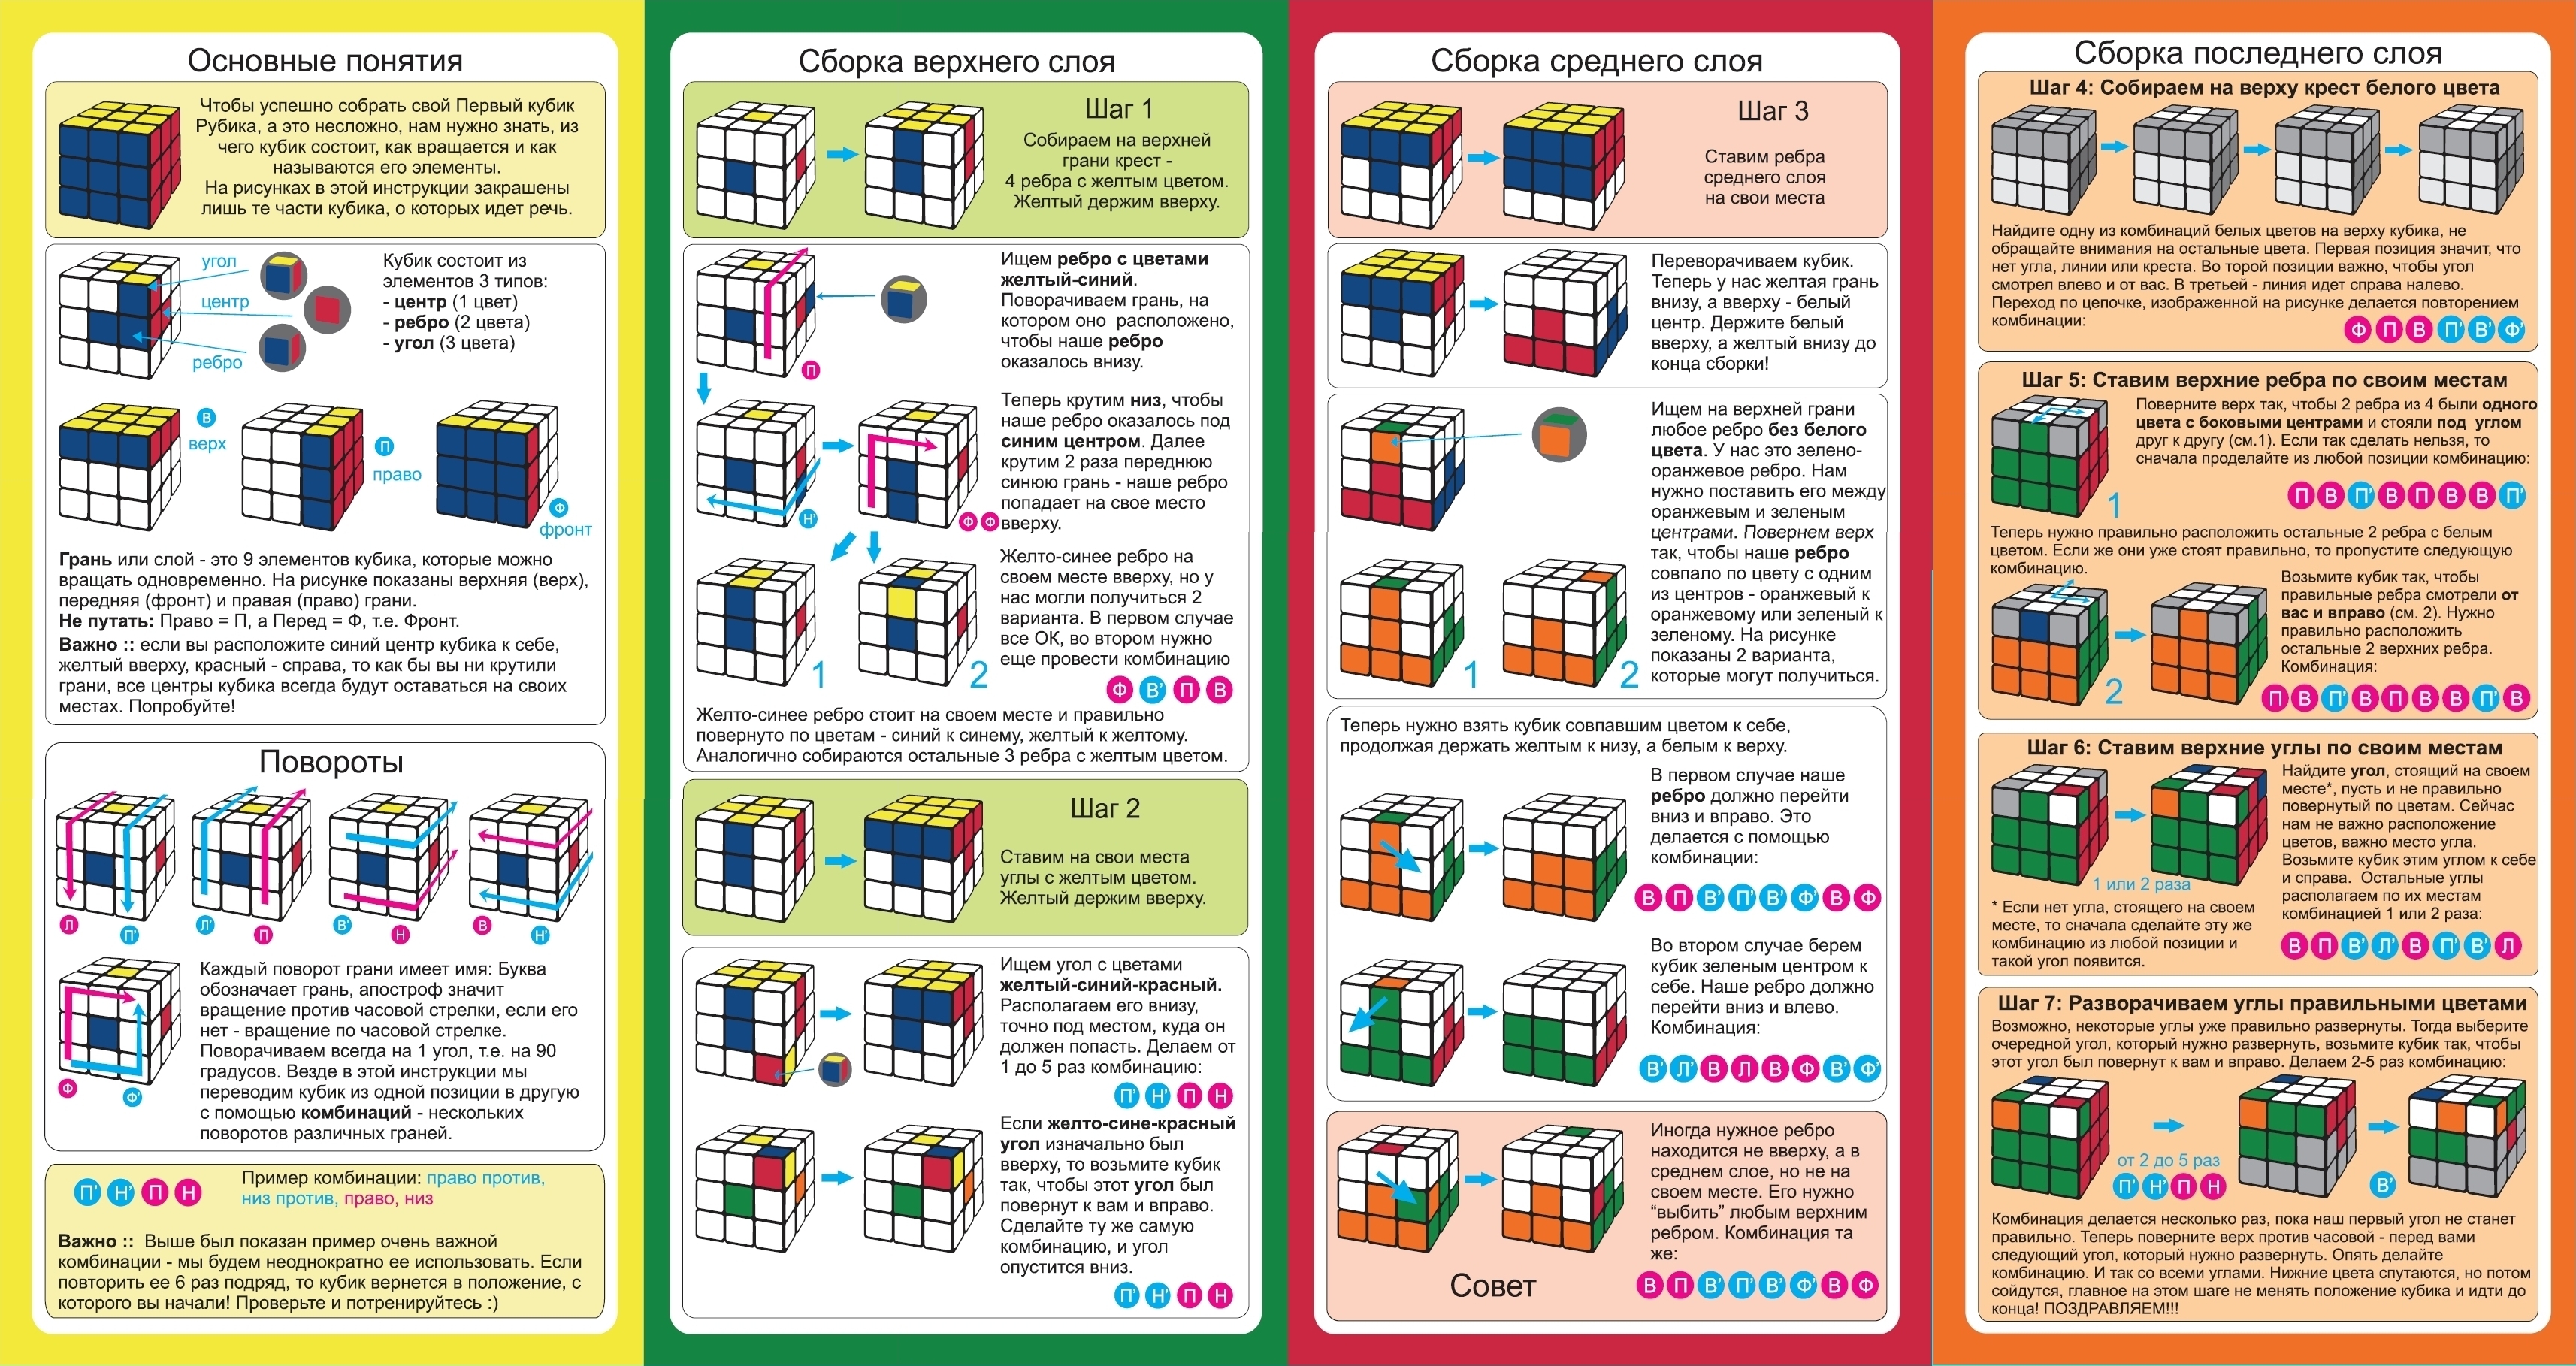 Кубик рубика как собирать легкая инструкция. Инструкция кубик Рубика 3х3 для начинающих схема. Алгоритм по сборке кубика Рубика 3х3 для начинающих. Сборка кубика Рубика 3х3 схема сборки для начинающих пошагово. Инструкция сборки кубика Рубика 3х3.